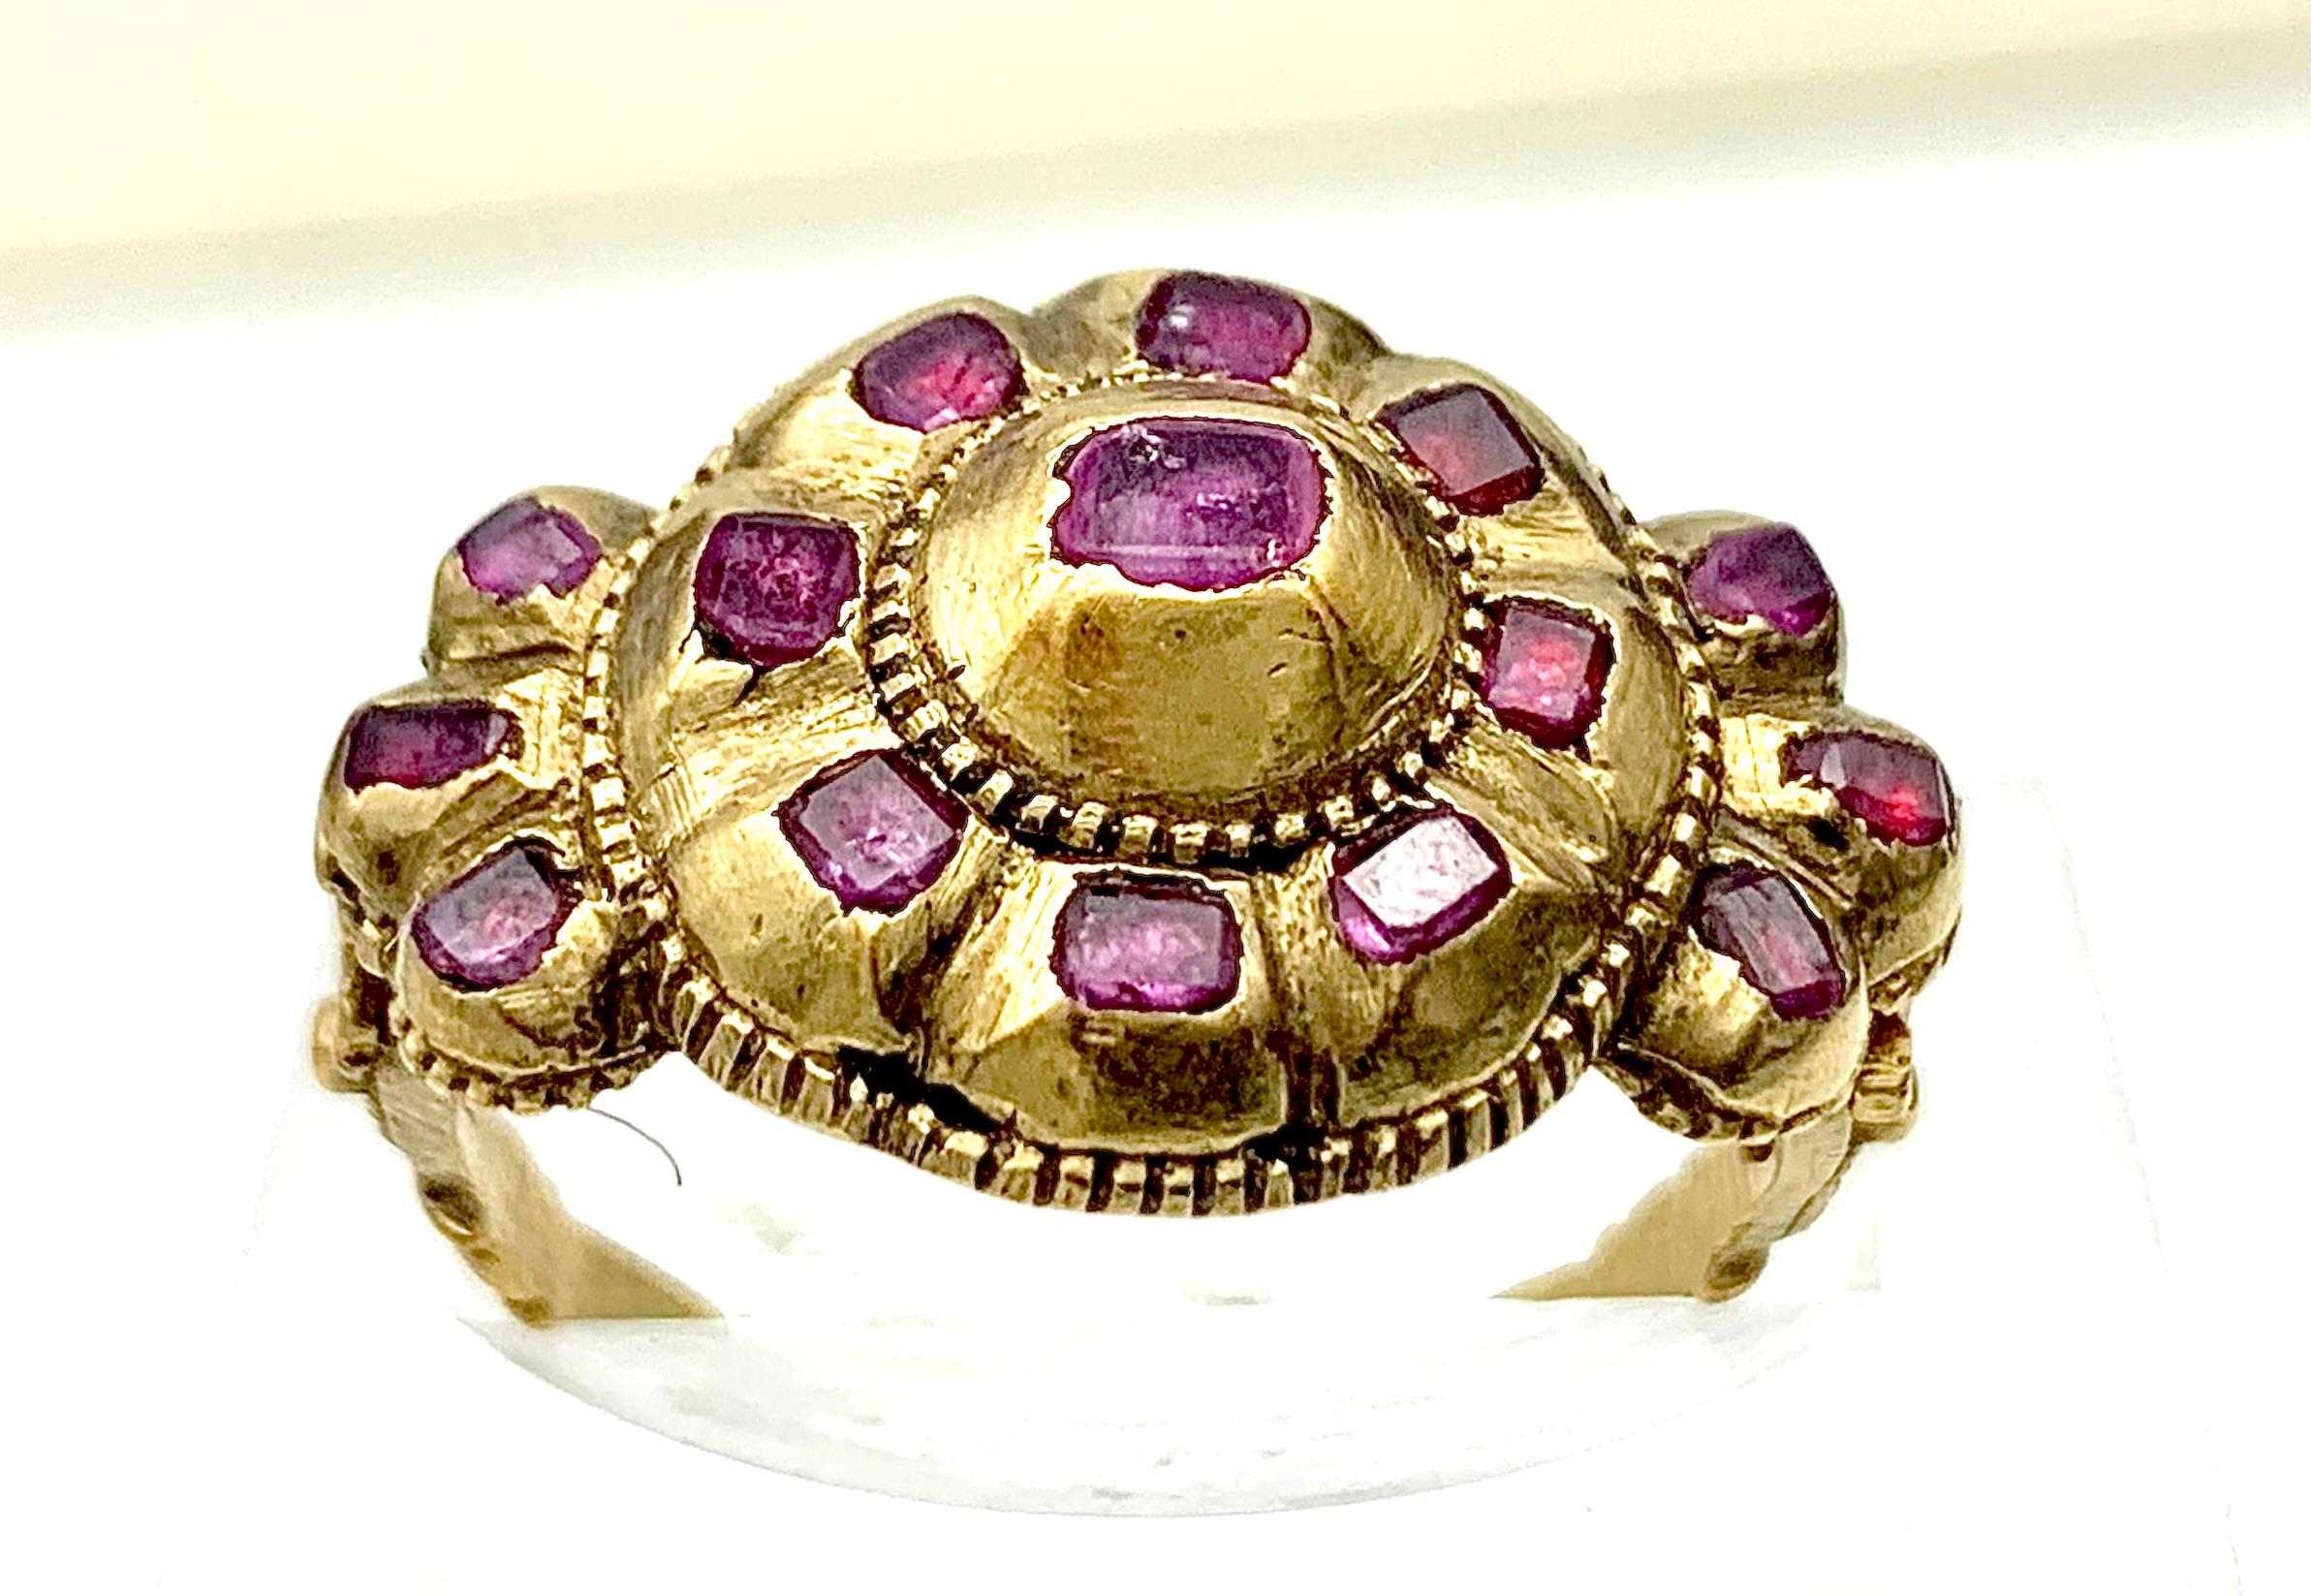 Cette bague du milieu du XVIIIe siècle est sertie de rubis plats. La tête de l'anneau, en forme de rosette, est sertie de huit petits et d'un grand rubis. La pierre centrale, plus grande, est fixée à la tête de l'anneau dans une monture fermée en